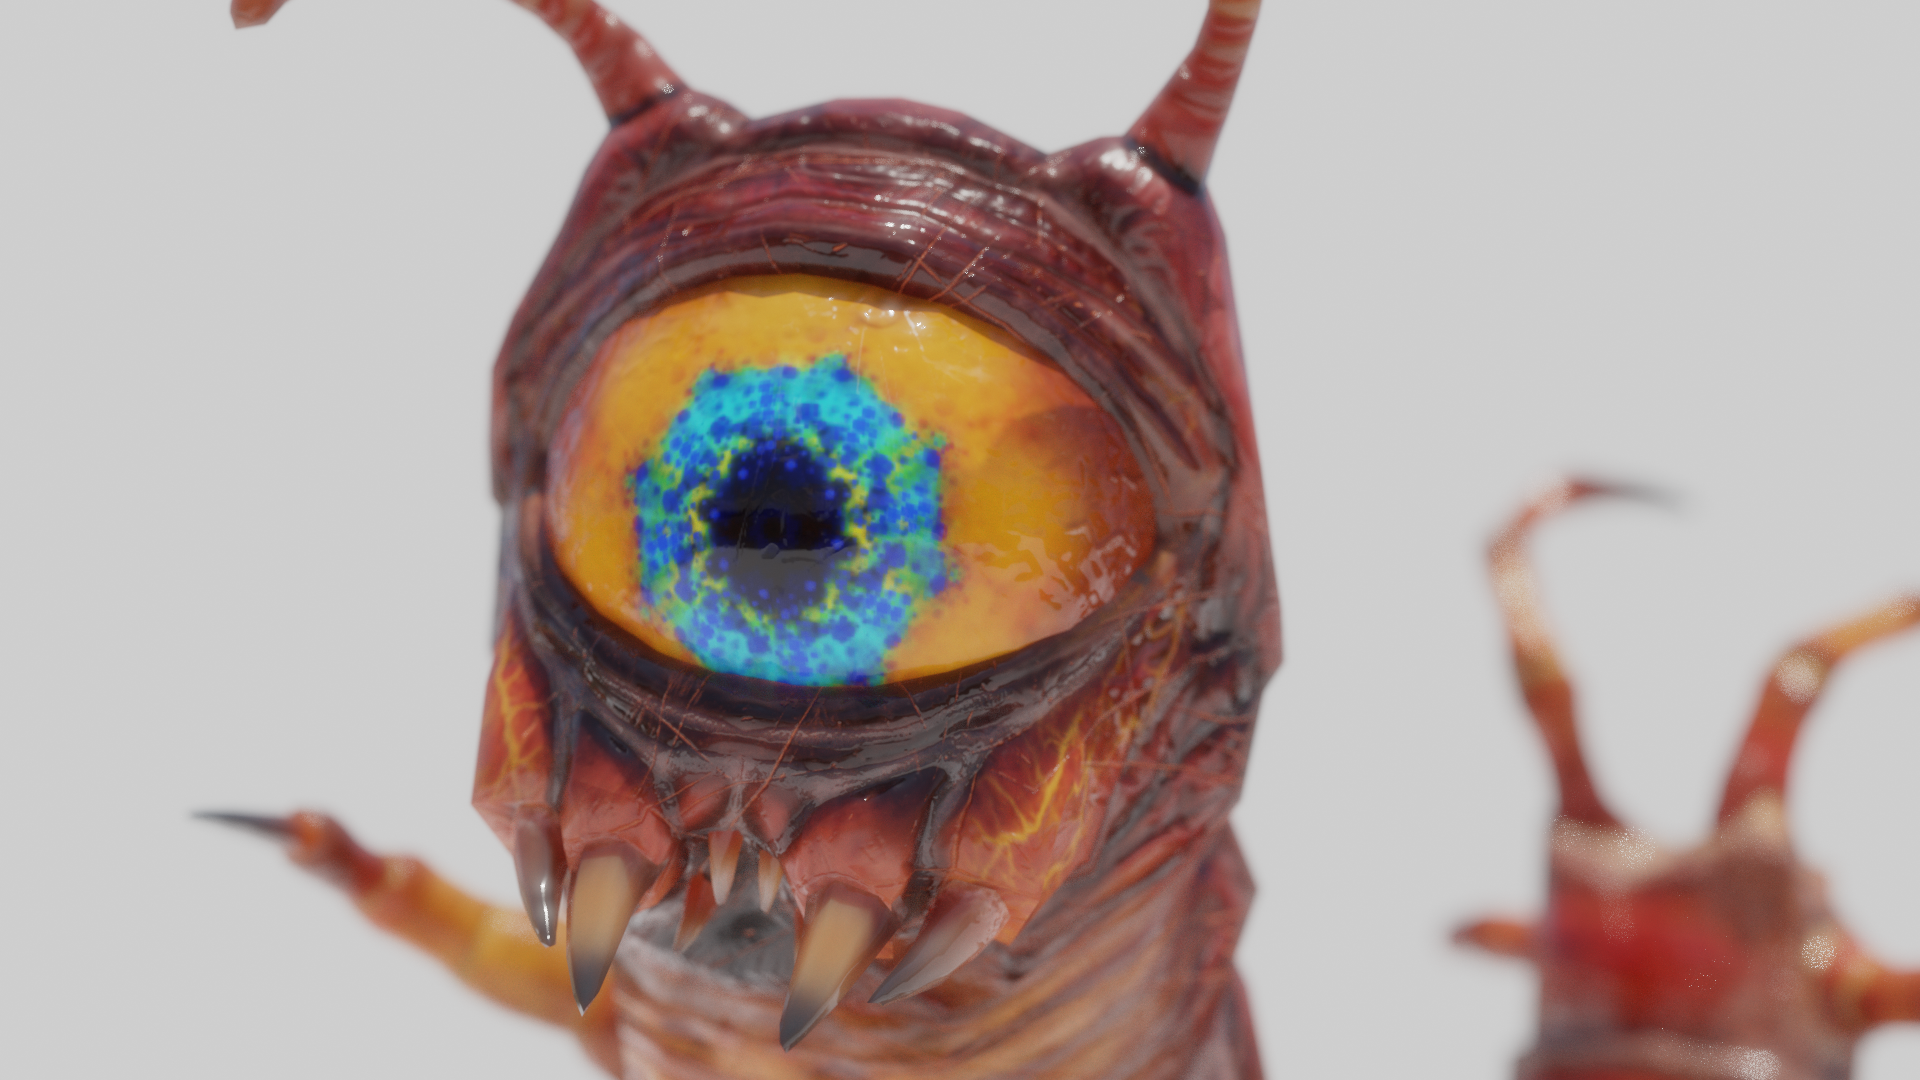 Centipede eyeball monster, front eyeball view.